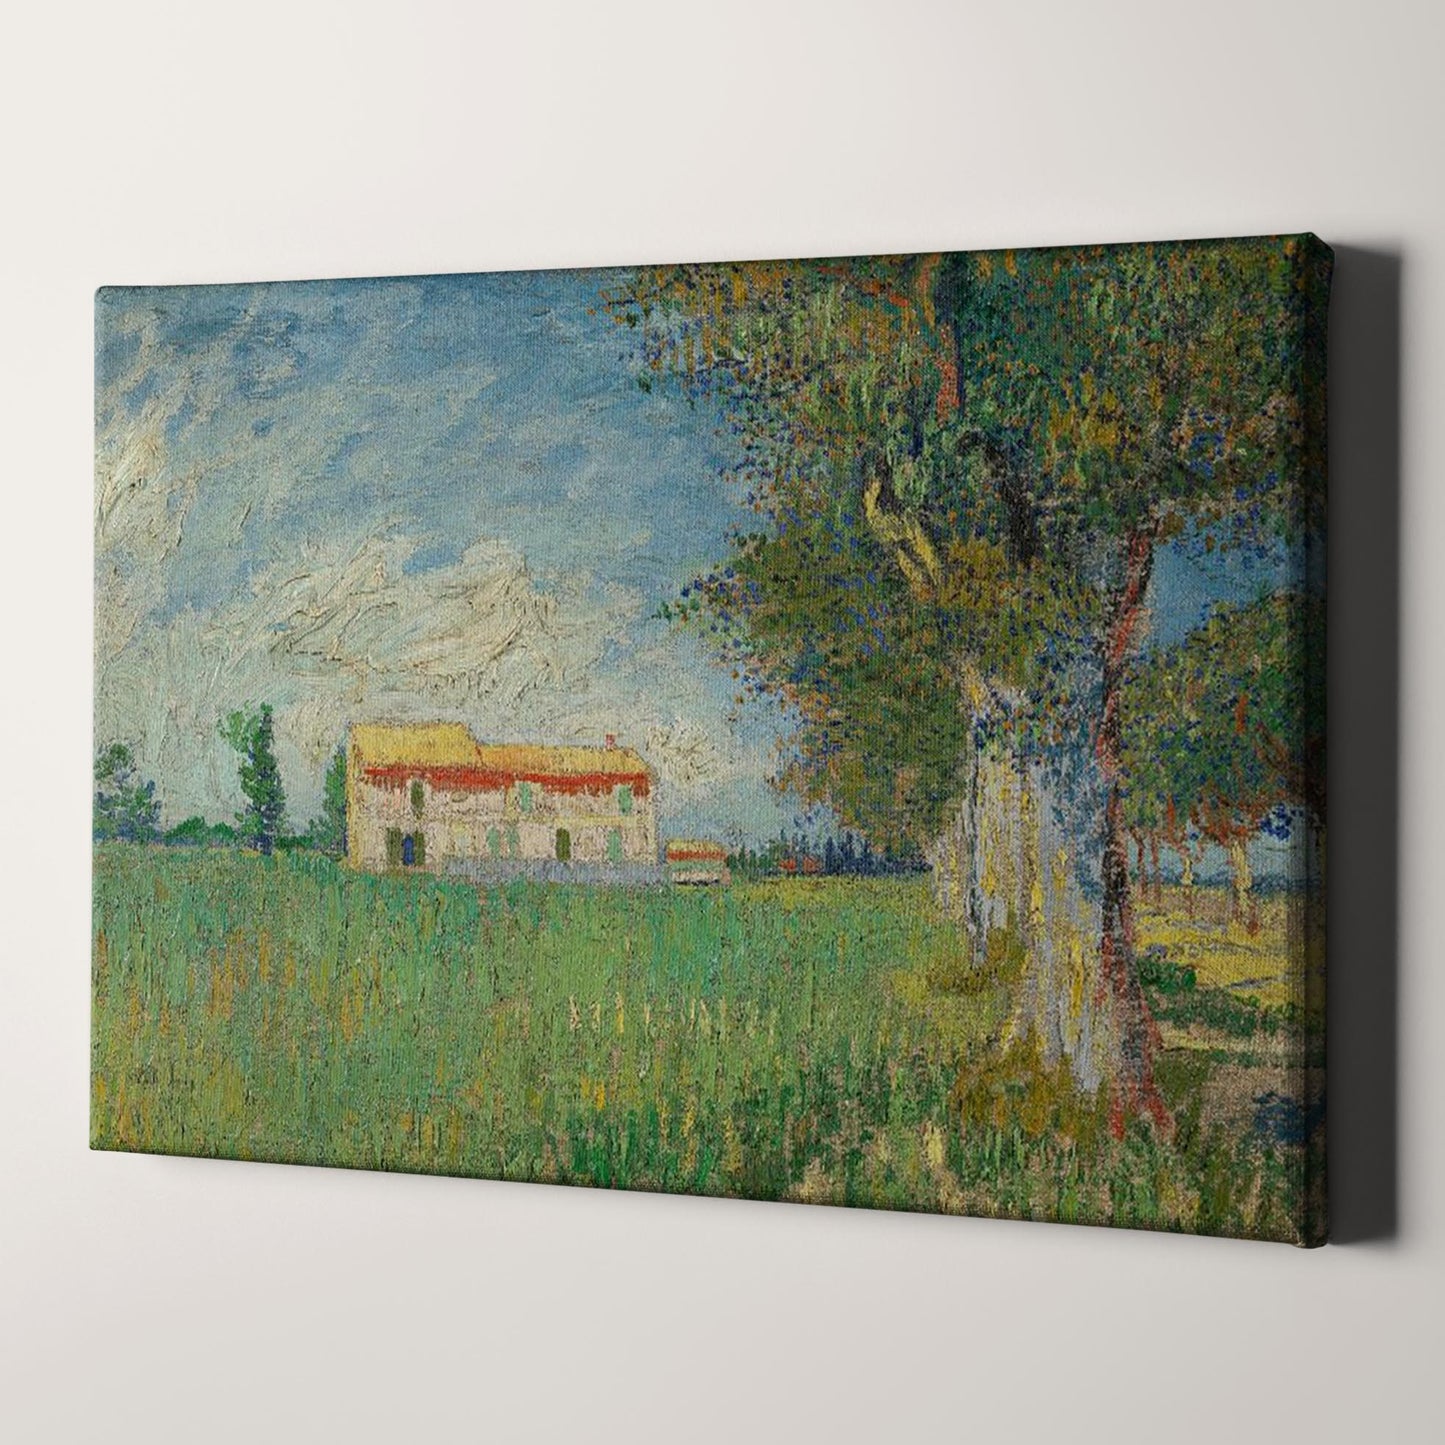 Farmhouse in a Wheatfield (1888) by Van Gogh